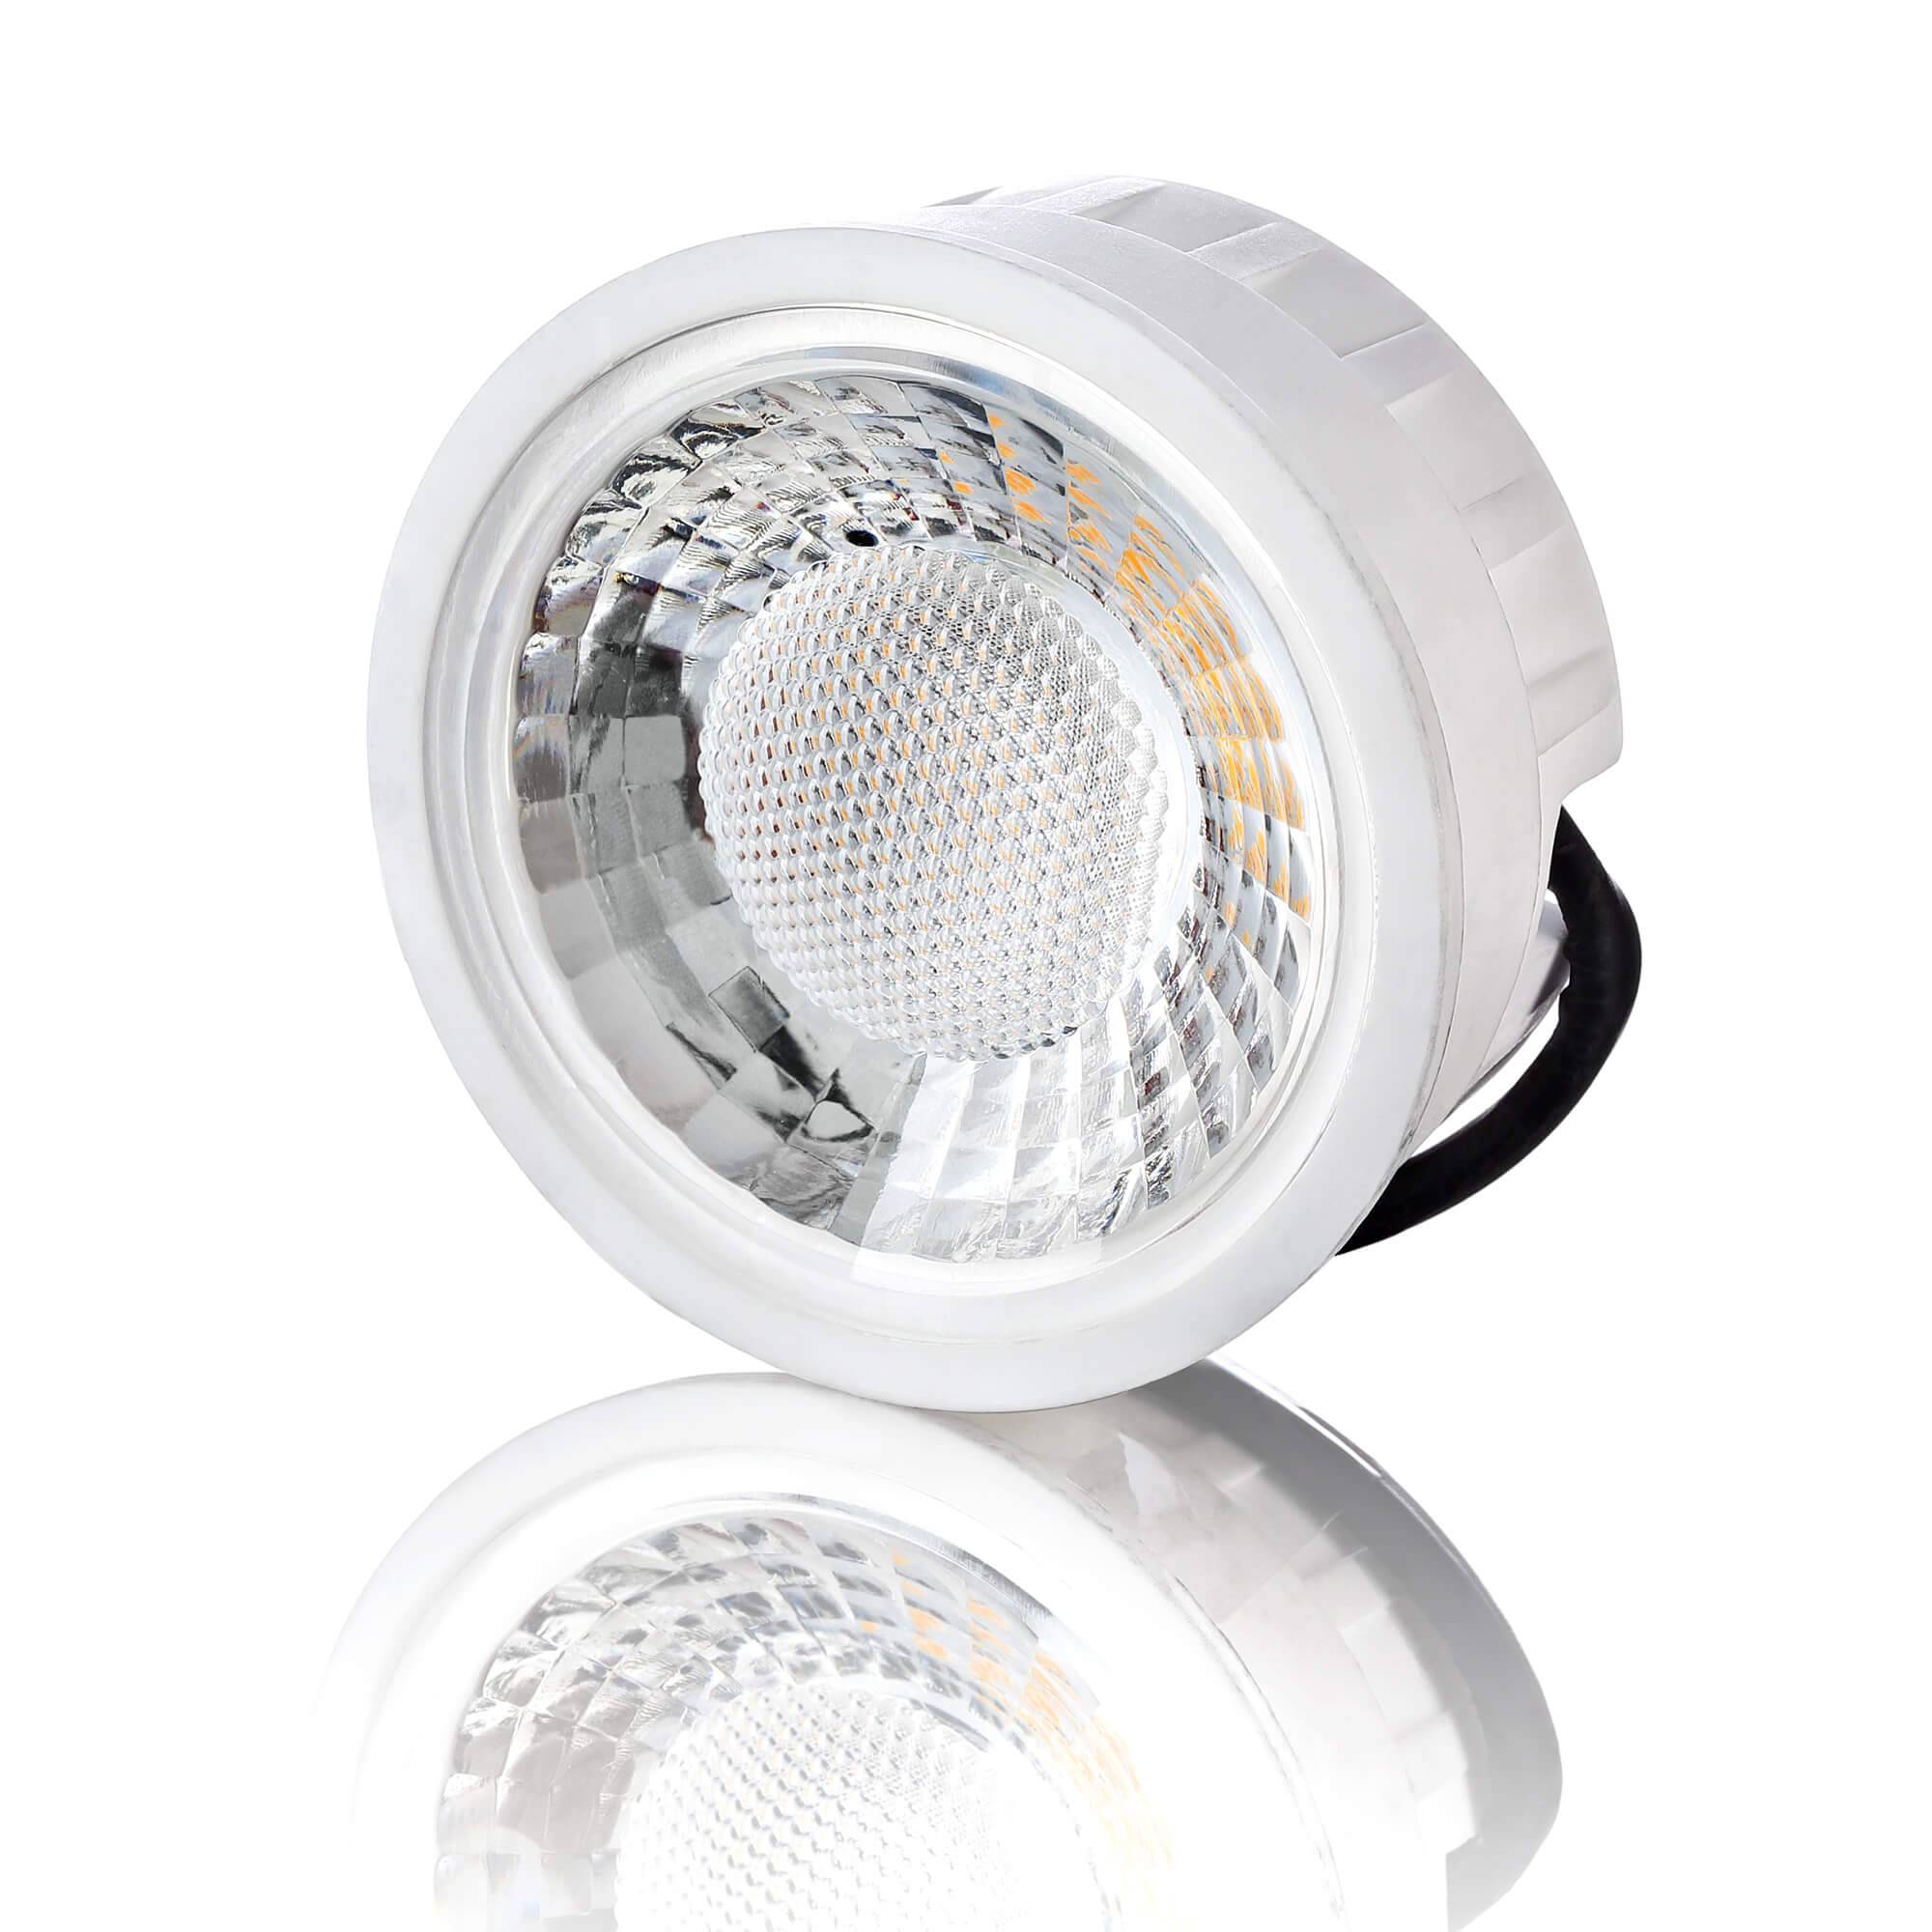 LED-Modul 230V dimmbar für Einbaustrahler, 5W in warmweiß / neutralweiß